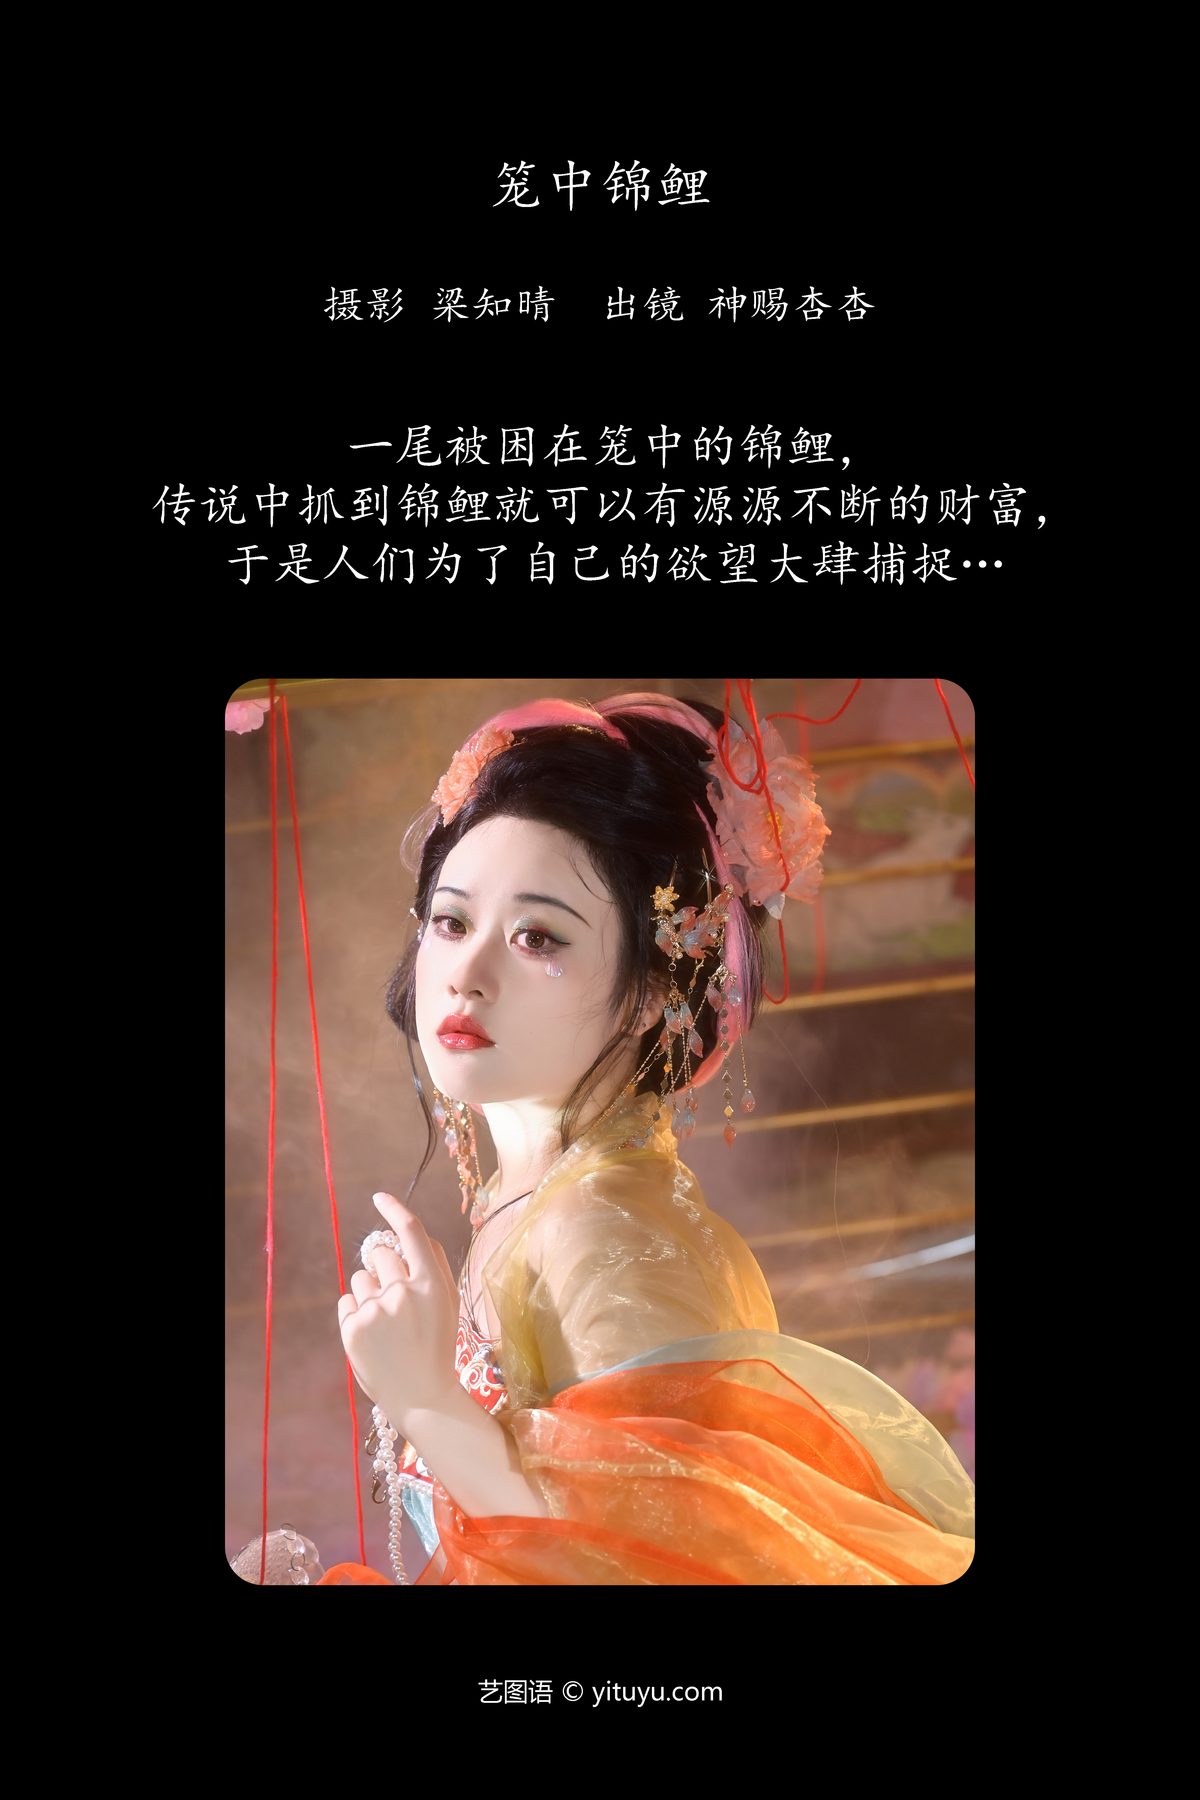 YiTuYu艺图语 Vol 5679 Shen Ci Xing Xing 0002 6292616210.jpg